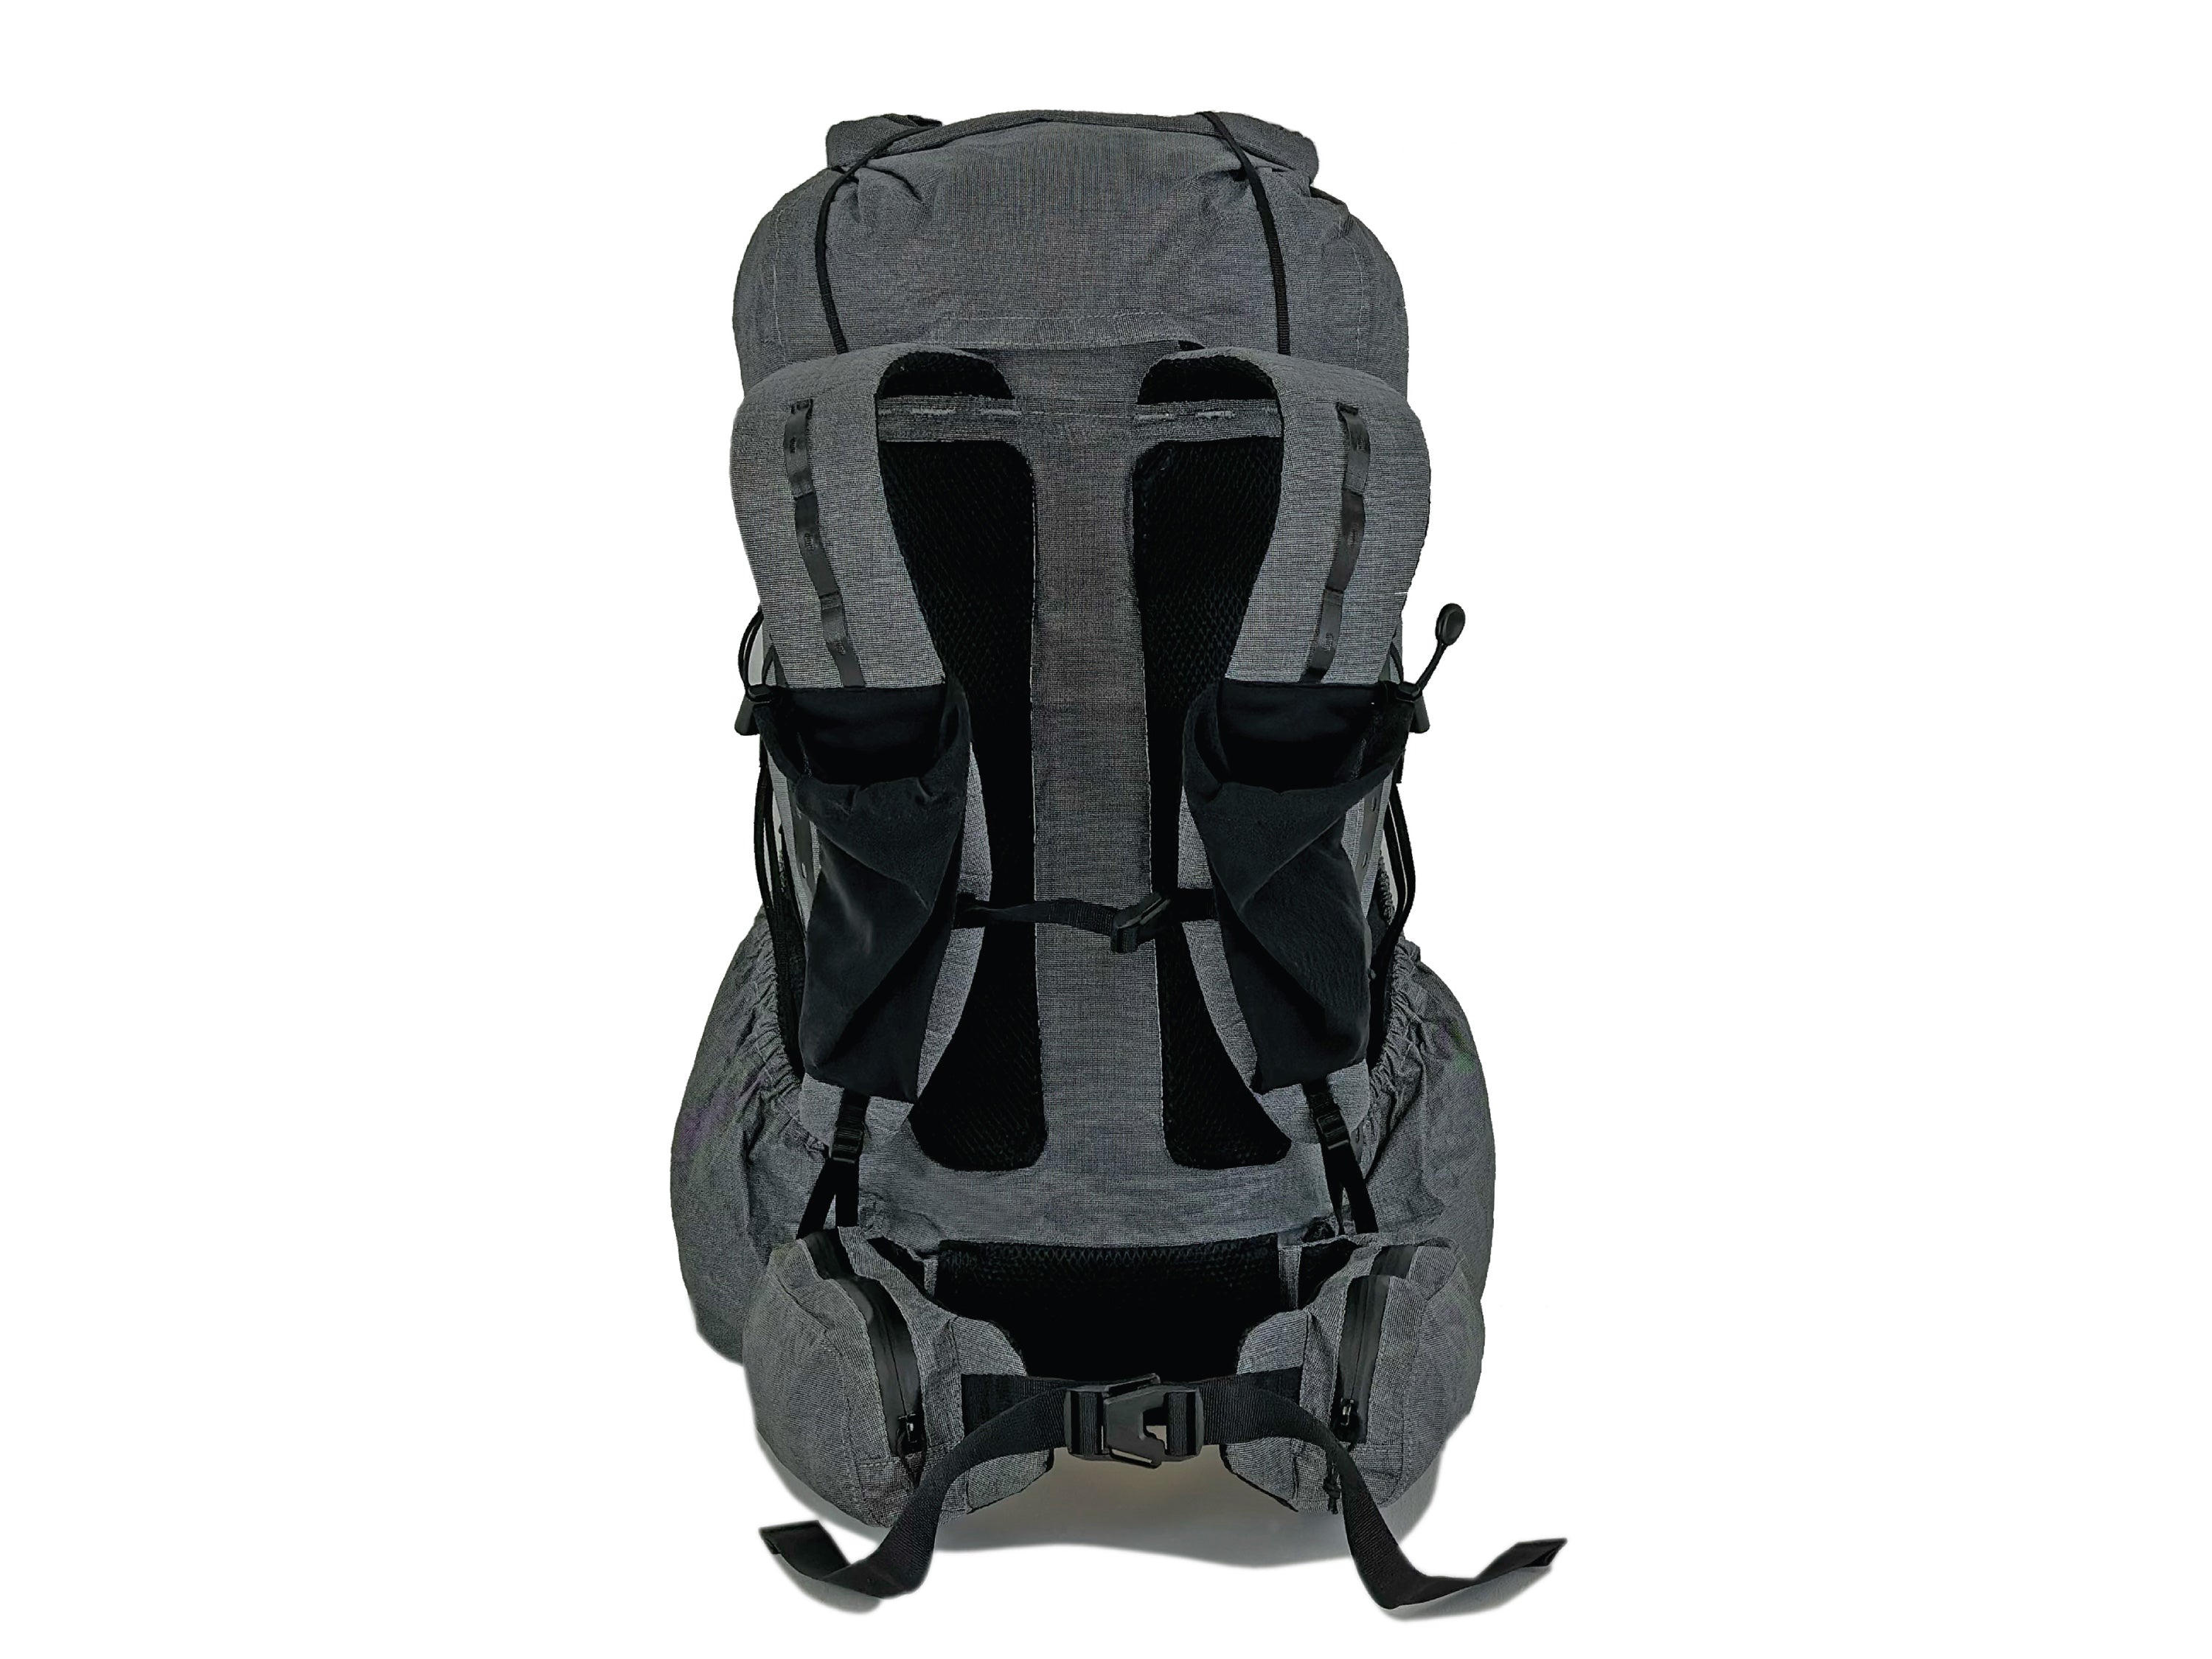 Backpack Pro - HK Basics Premium Backpacks – HK BASICS